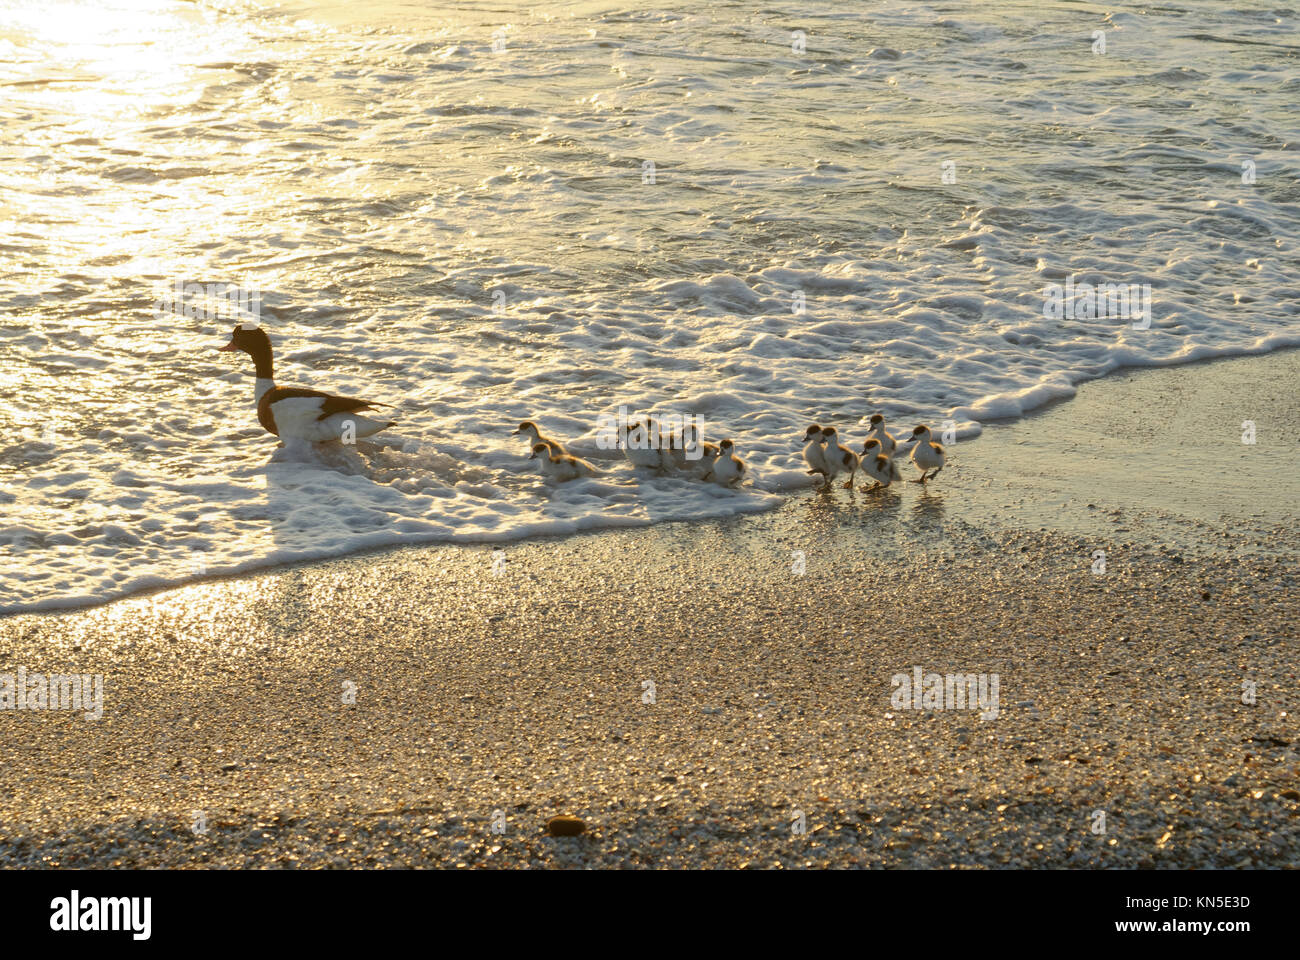 Giovani anatre a seguito della loro madre per la loro prima lezione di nuoto Foto Stock